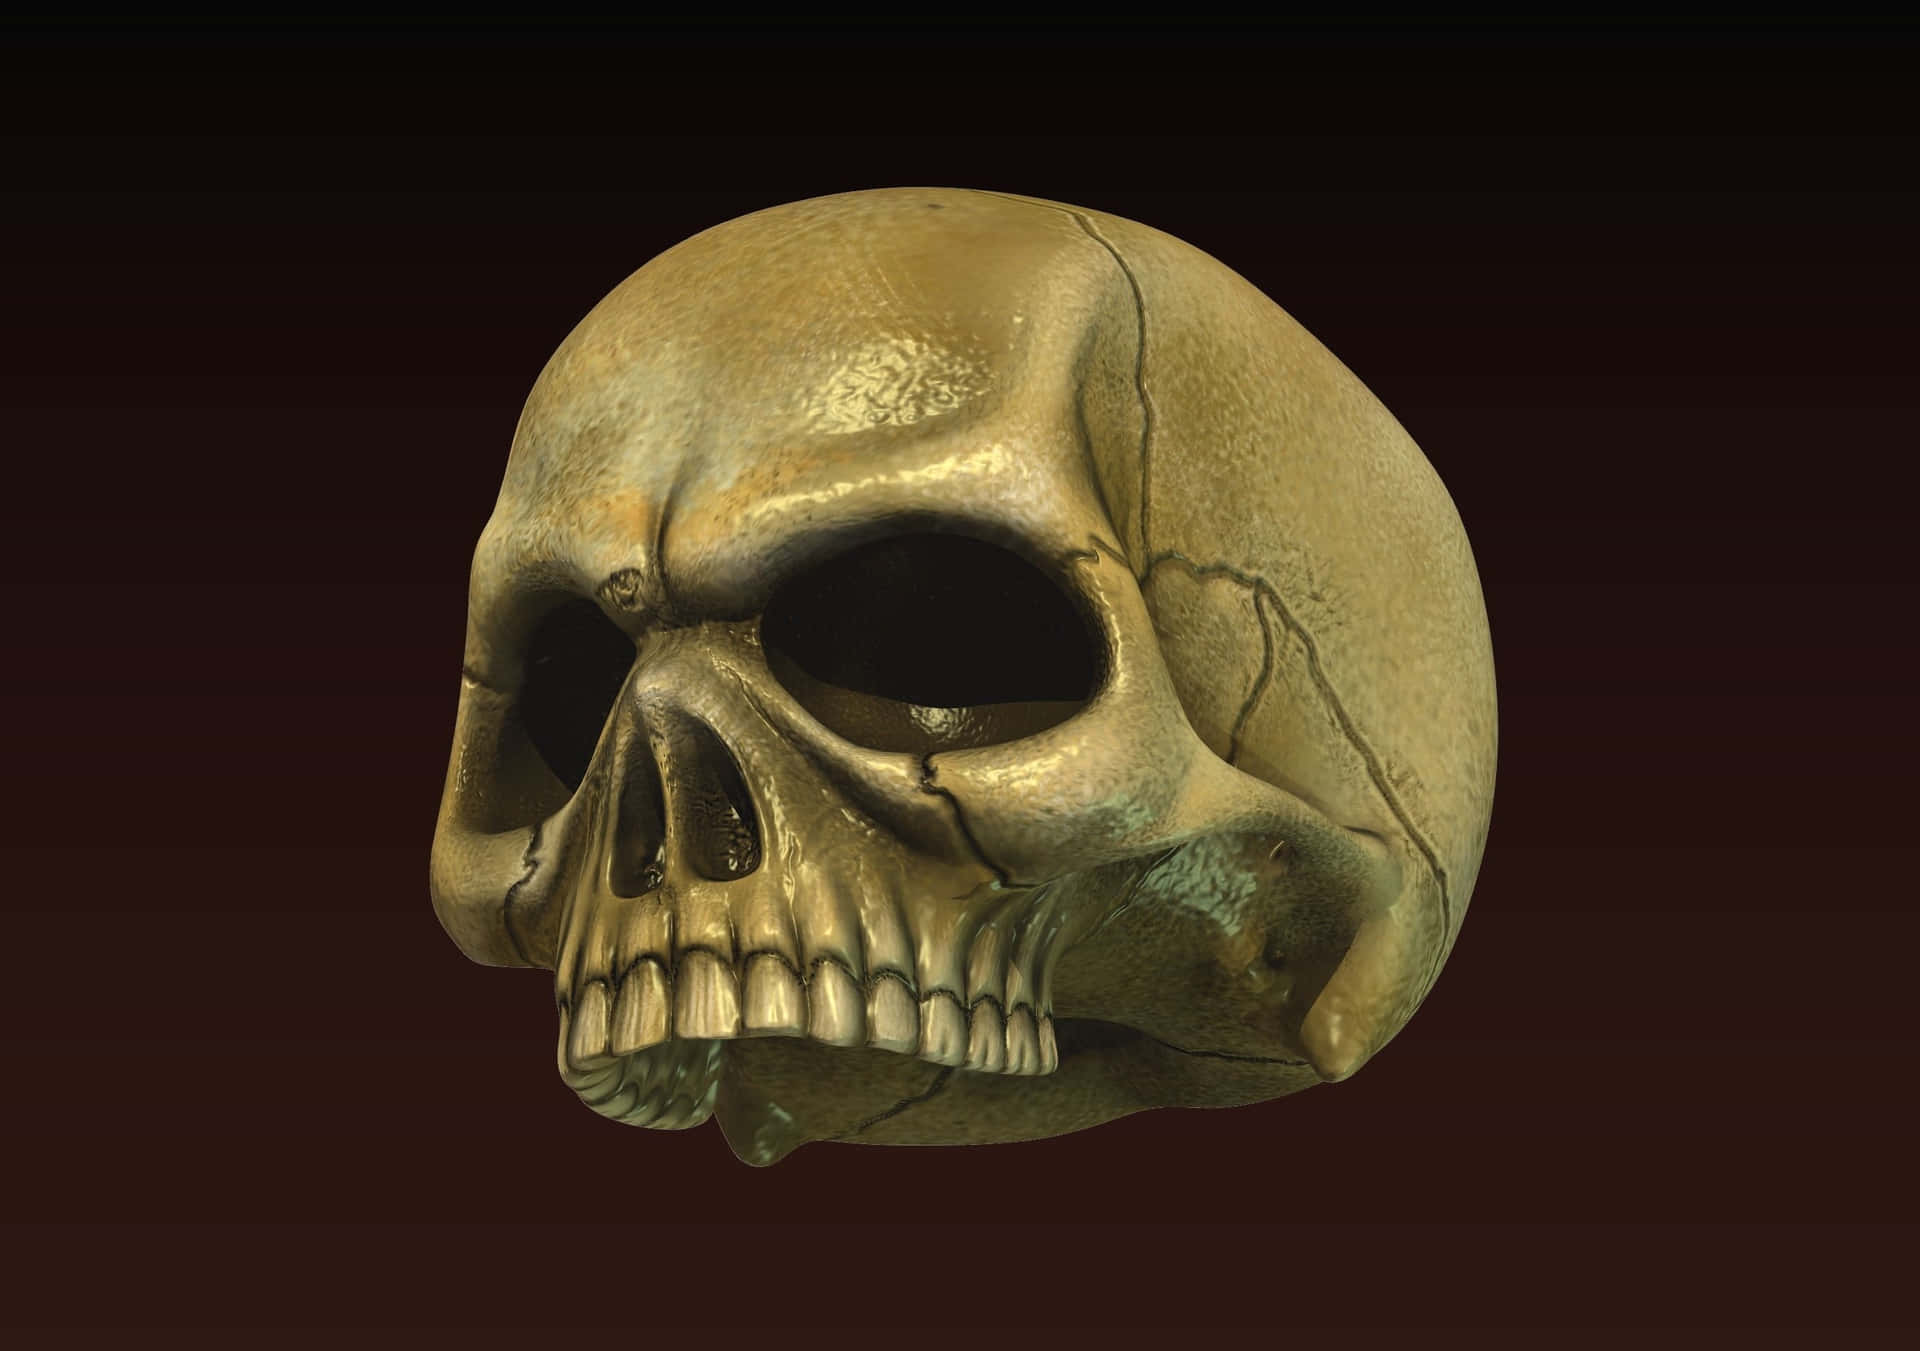 Bone-Chilling 3D Digital Art of a Skull Wallpaper